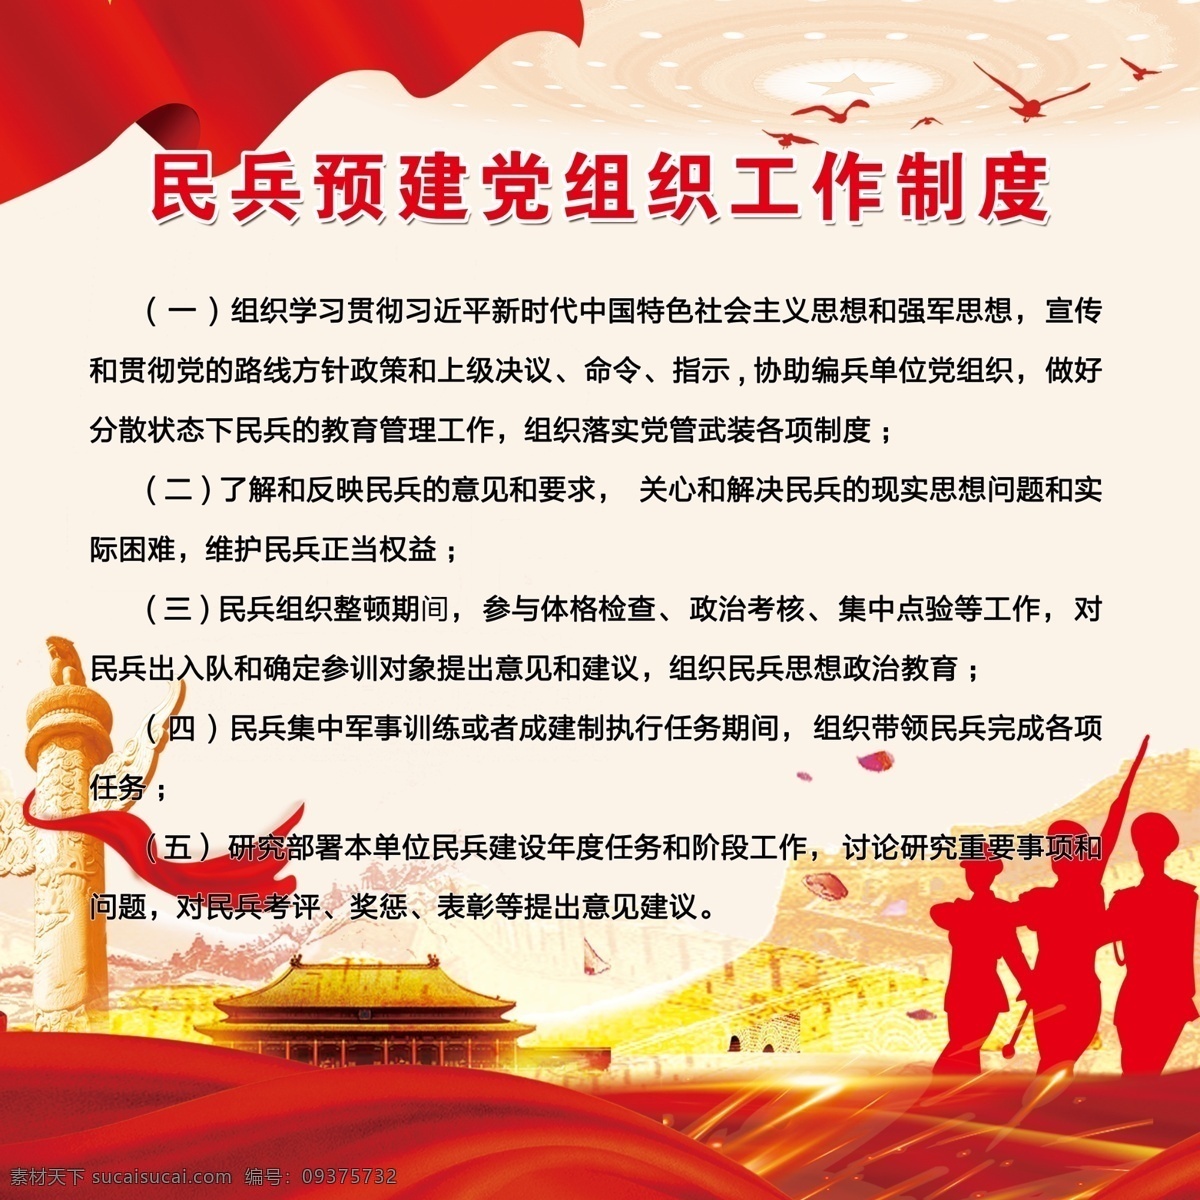 民兵制度 预建党组织 宣传栏 民兵 军队 部队 红色 党建 分层